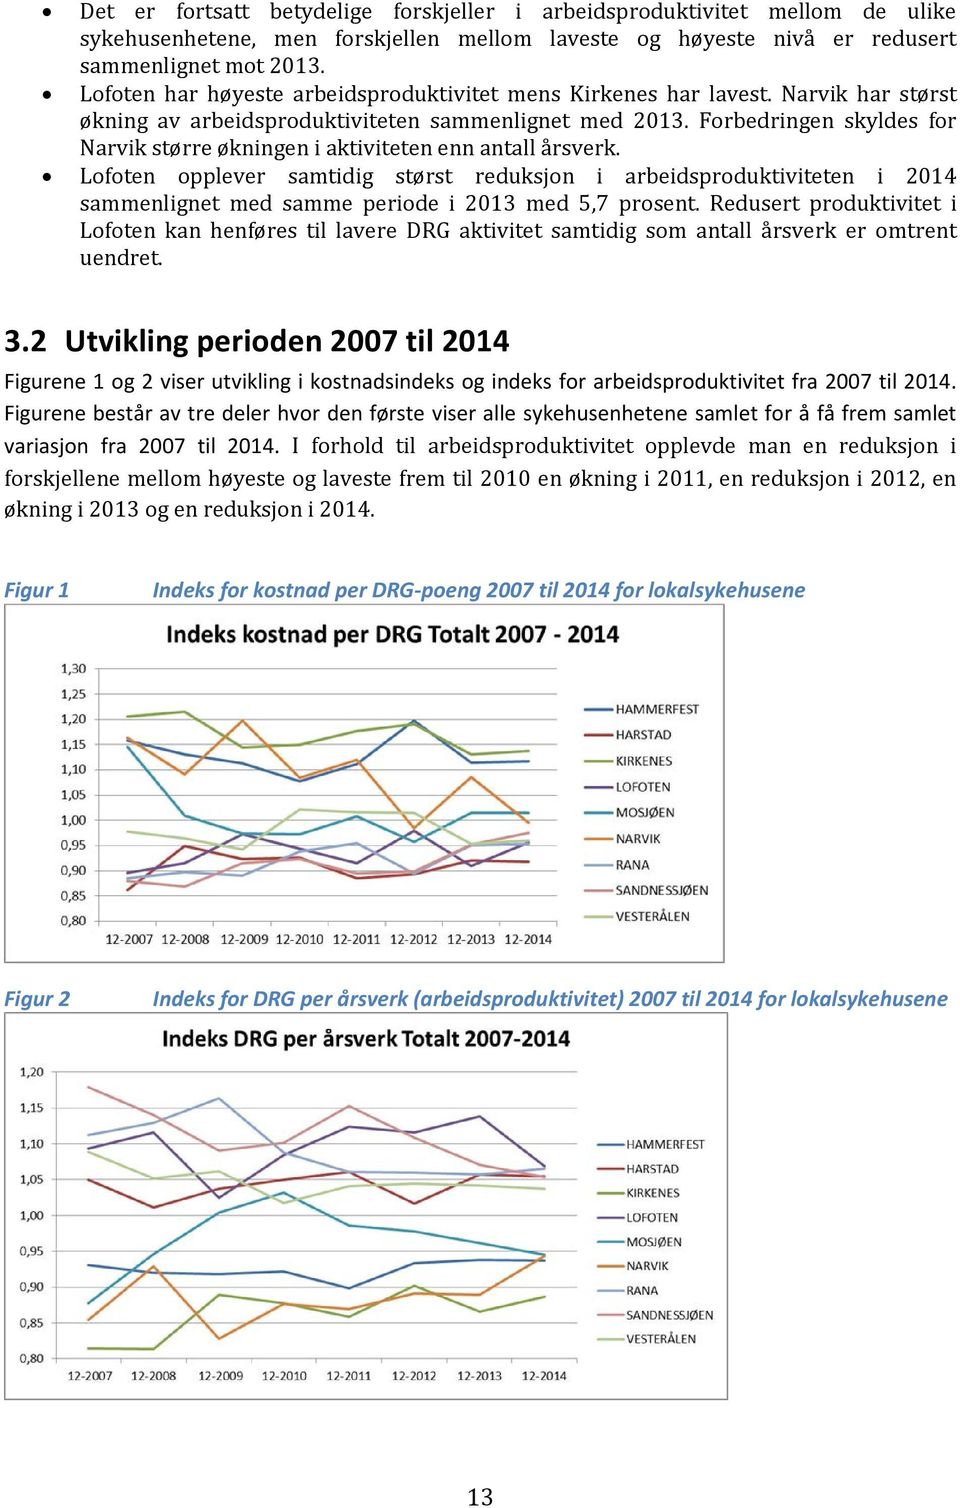 Forbedringen skyldes for Narvik større økningen i aktiviteten enn antall årsverk.